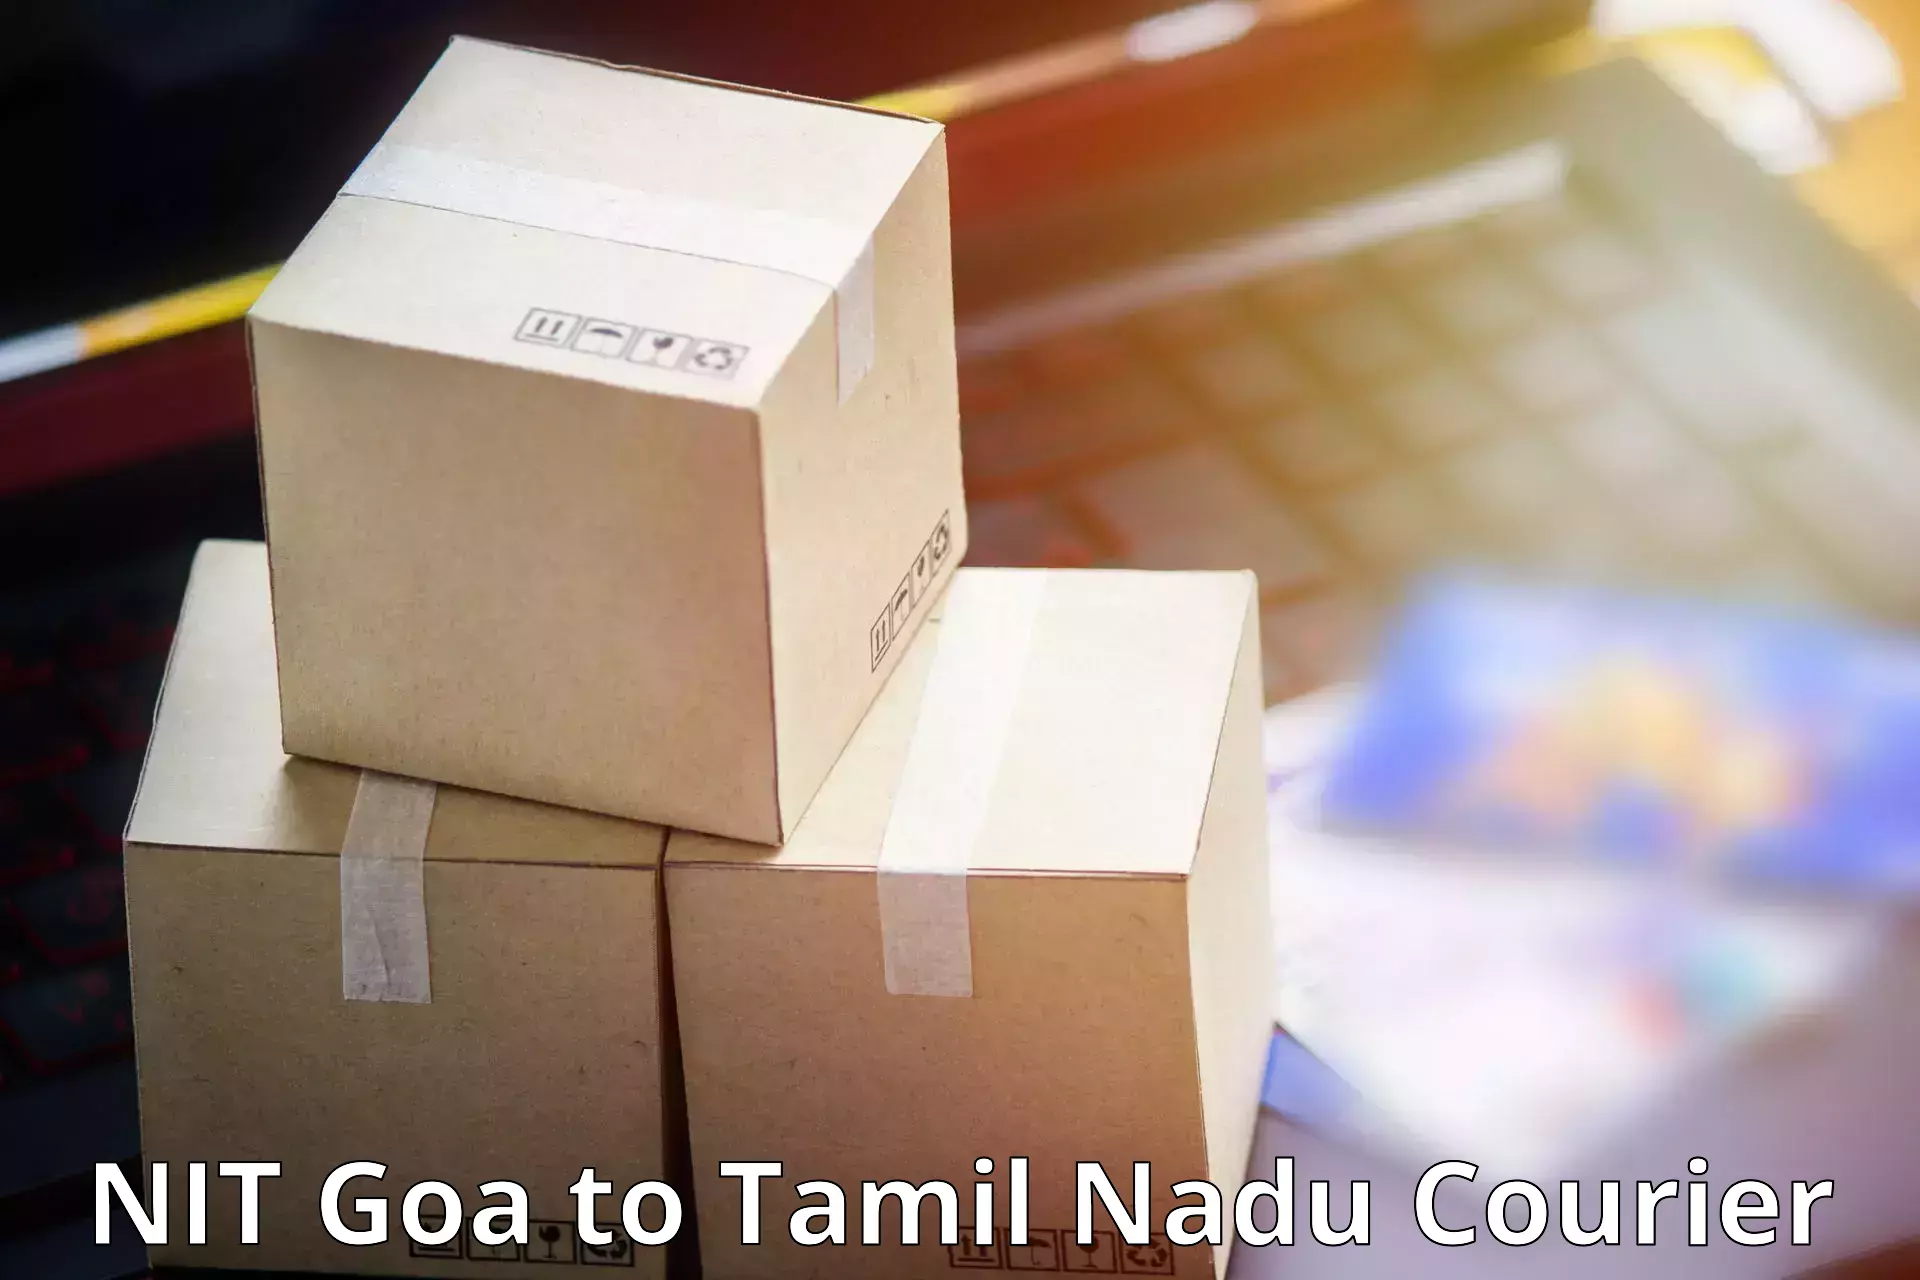 Express logistics providers NIT Goa to Kalpakkam